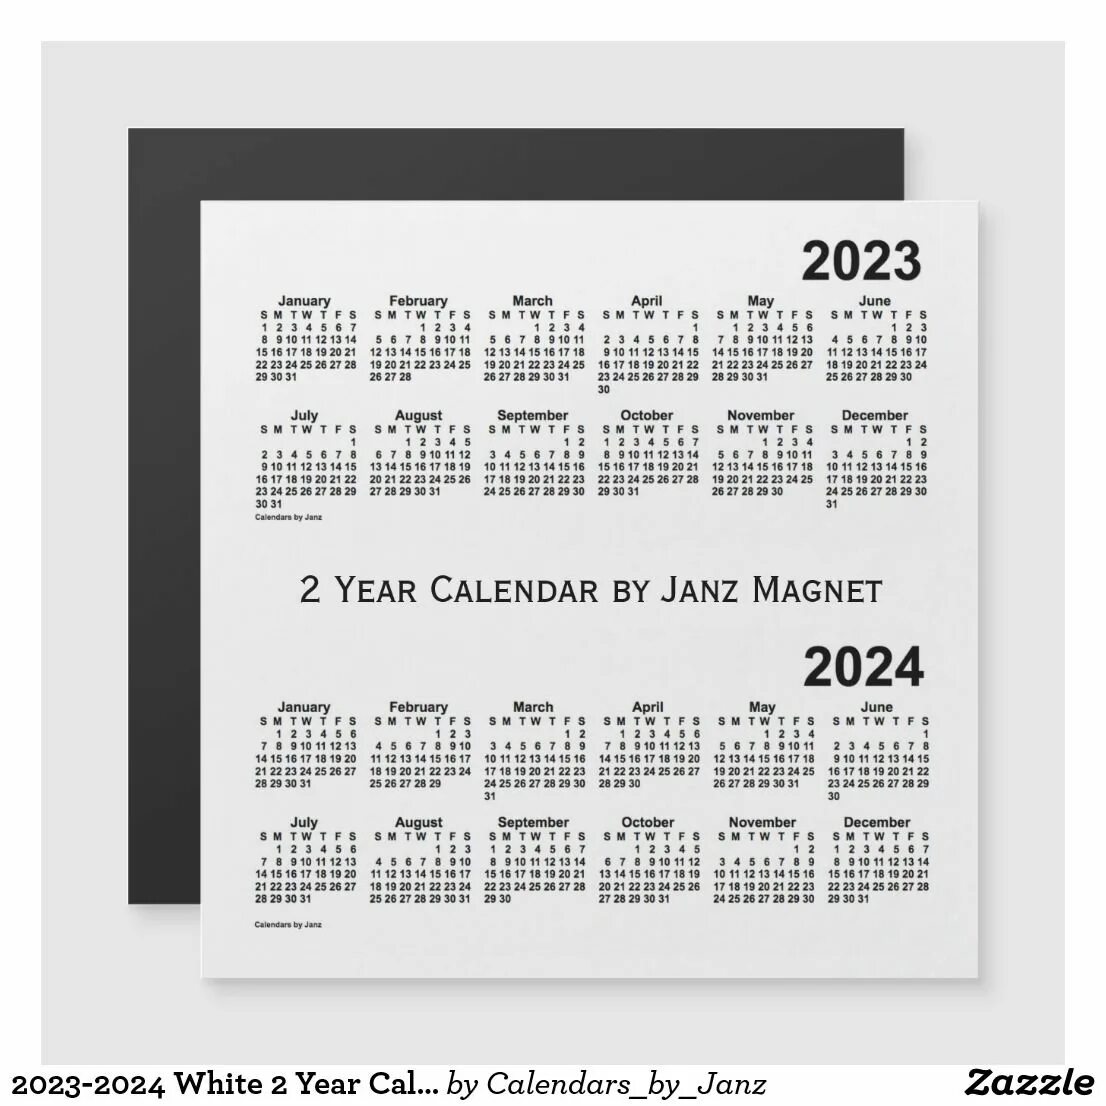 Календарь игр февраль 2024. Календарь 2024-2025. Календарь на февраль 2024 года. Календарь на 2025 год. Февраль 2025 календарь.